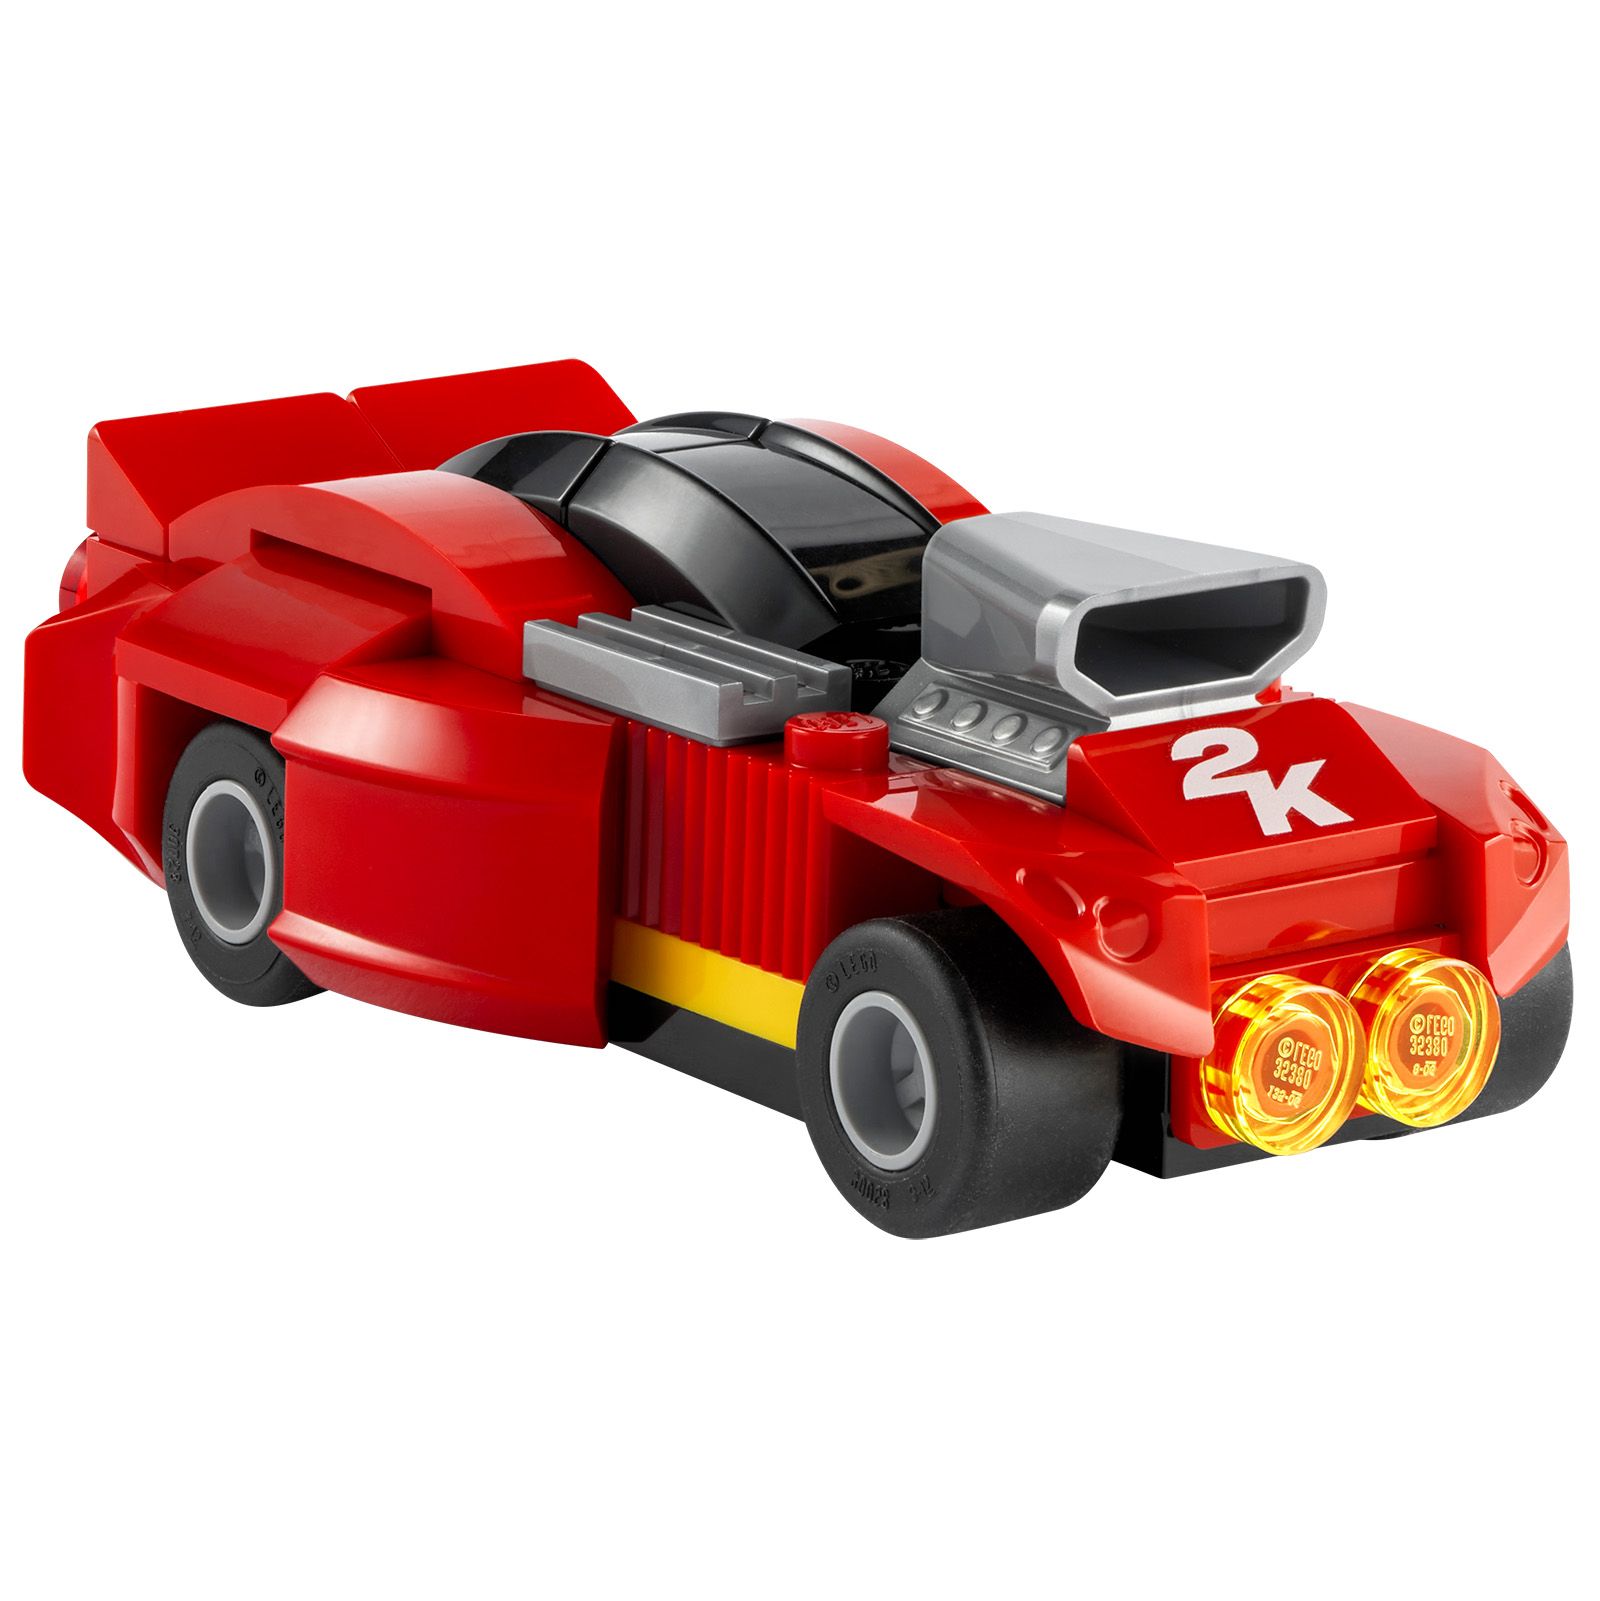 LEGO 2K Drive: trailer dan produk LEGO yang ditawarkan dengan versi fisik tertentu dari video game